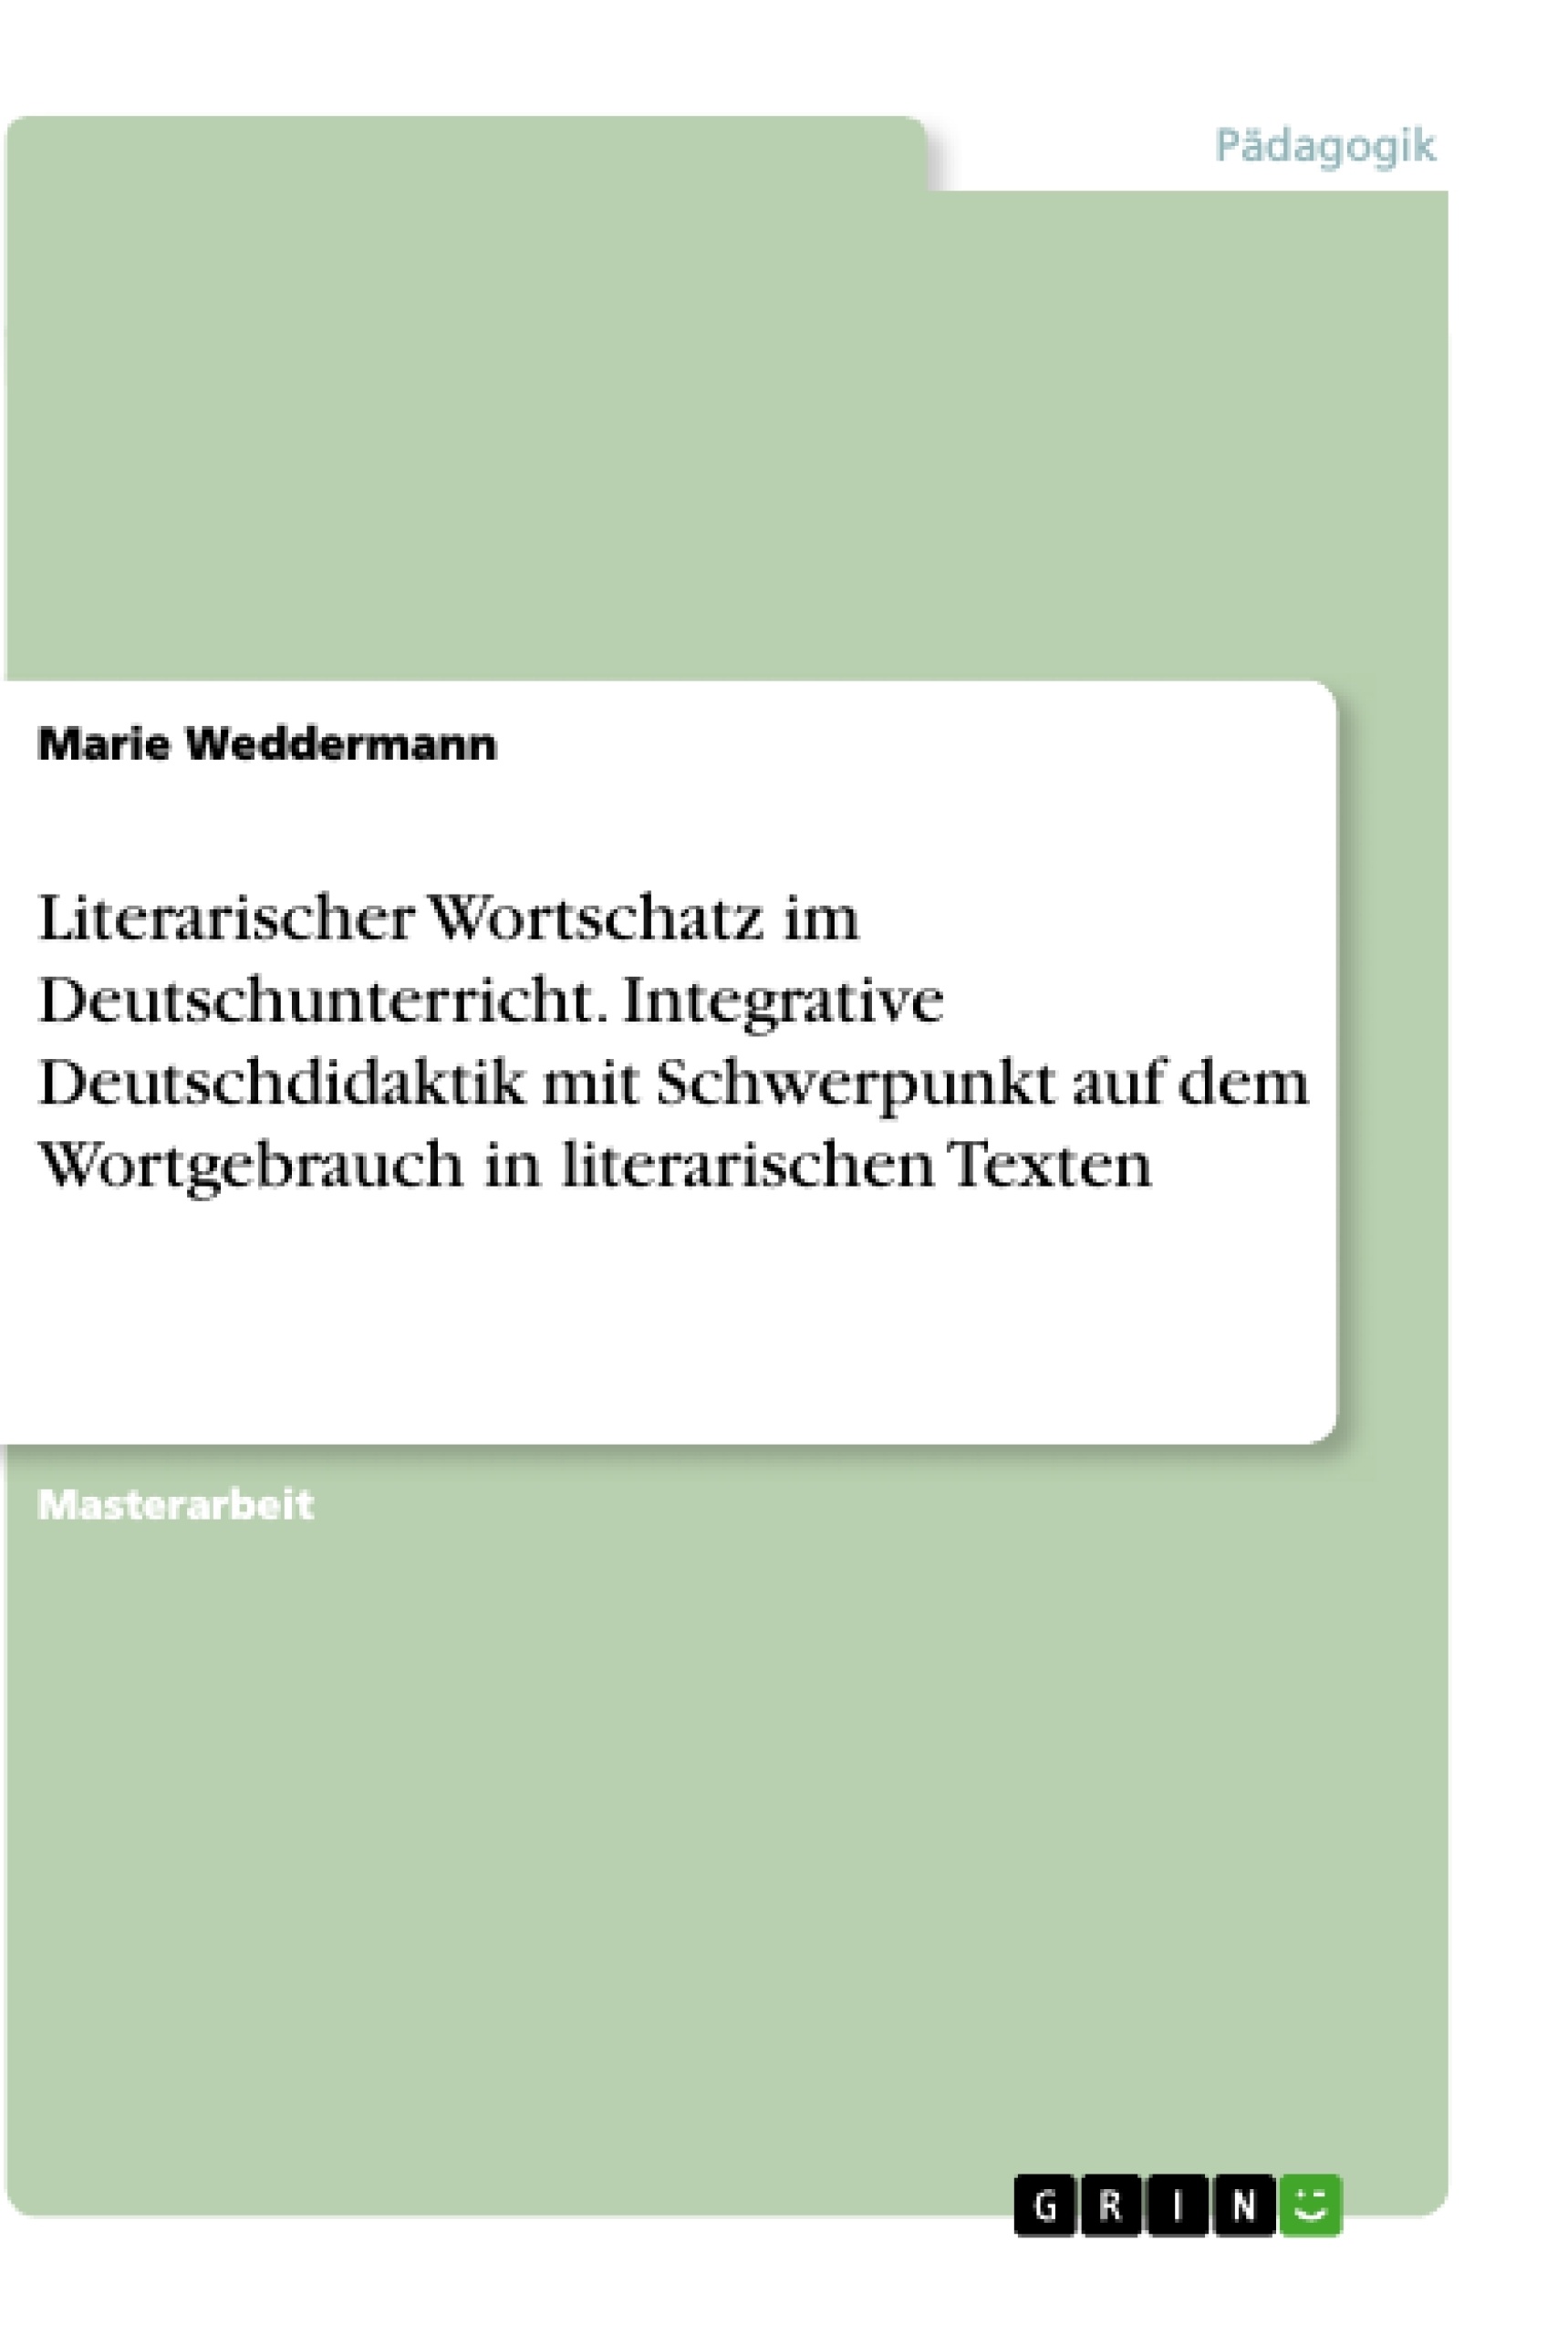 Título: Literarischer Wortschatz im Deutschunterricht. Integrative Deutschdidaktik mit Schwerpunkt auf dem Wortgebrauch in literarischen Texten